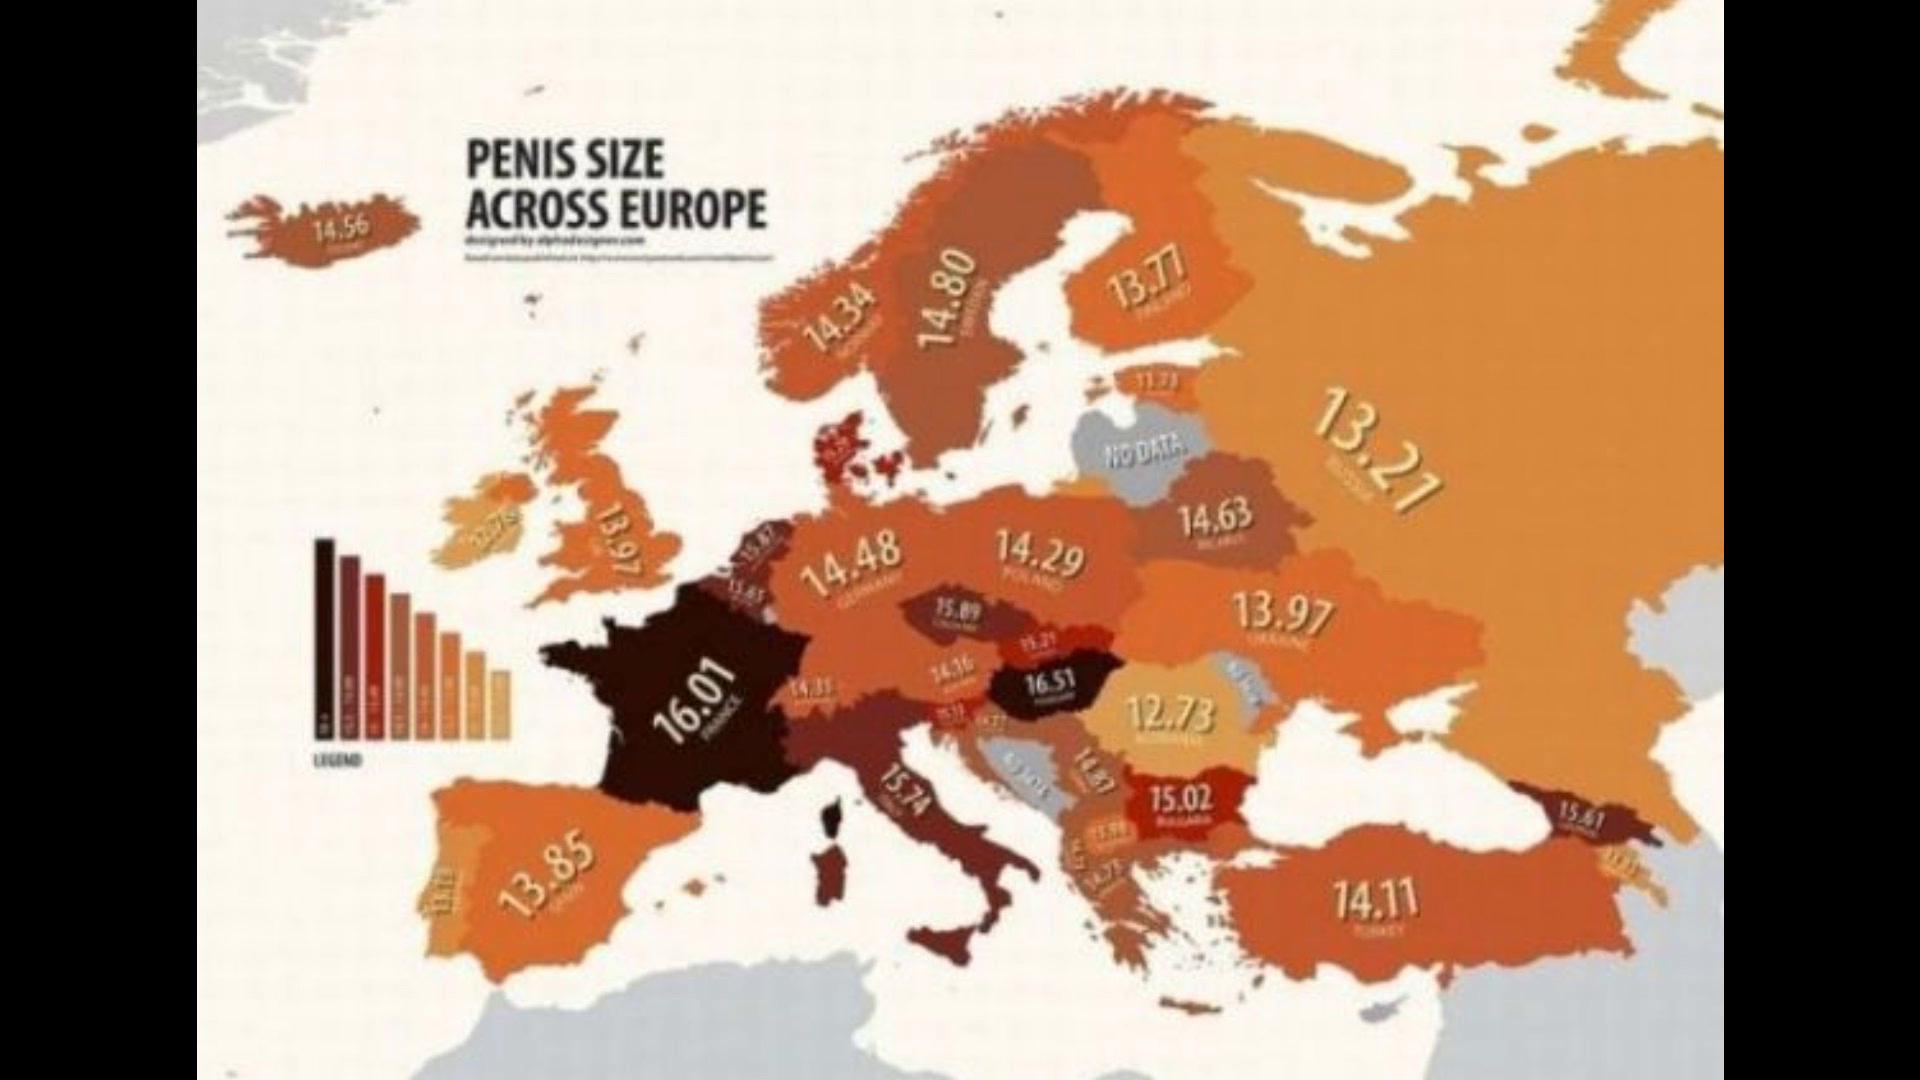 средняя длина члена у европейцев фото 89